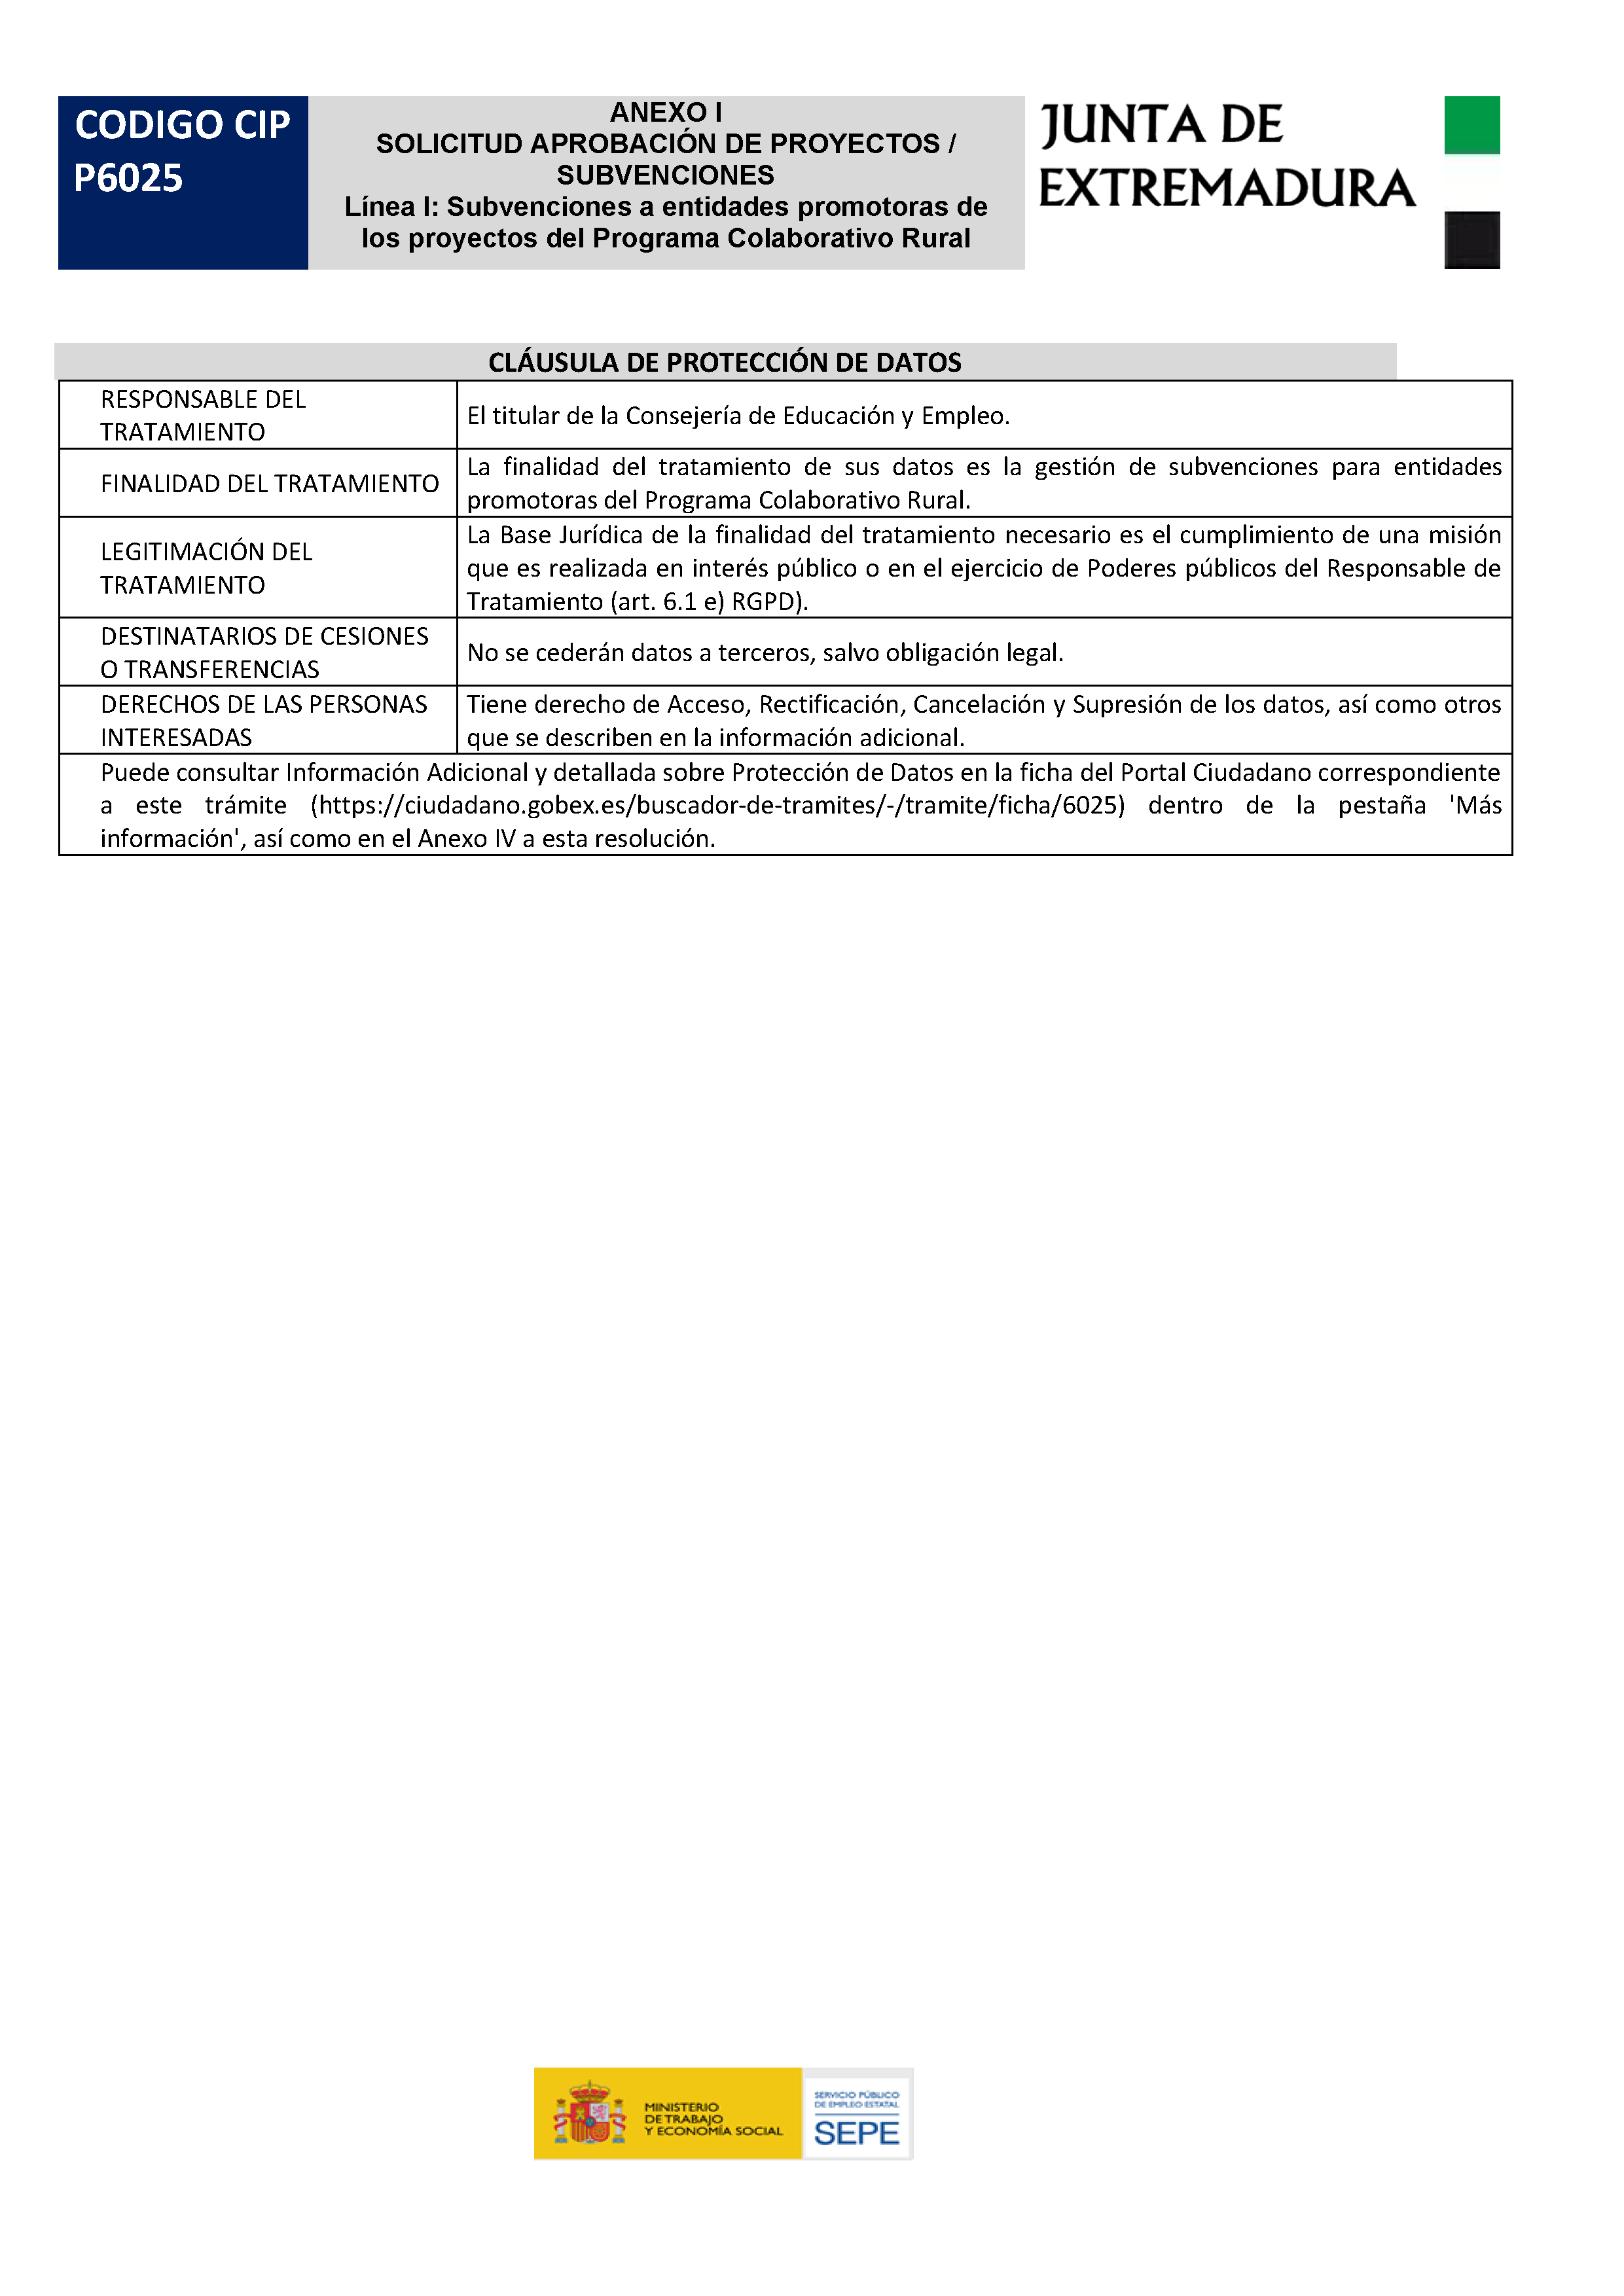 ANEXO I. SOLICITUD APROBACION DE PROYECTOS / SUBVENCIONES Pag 5